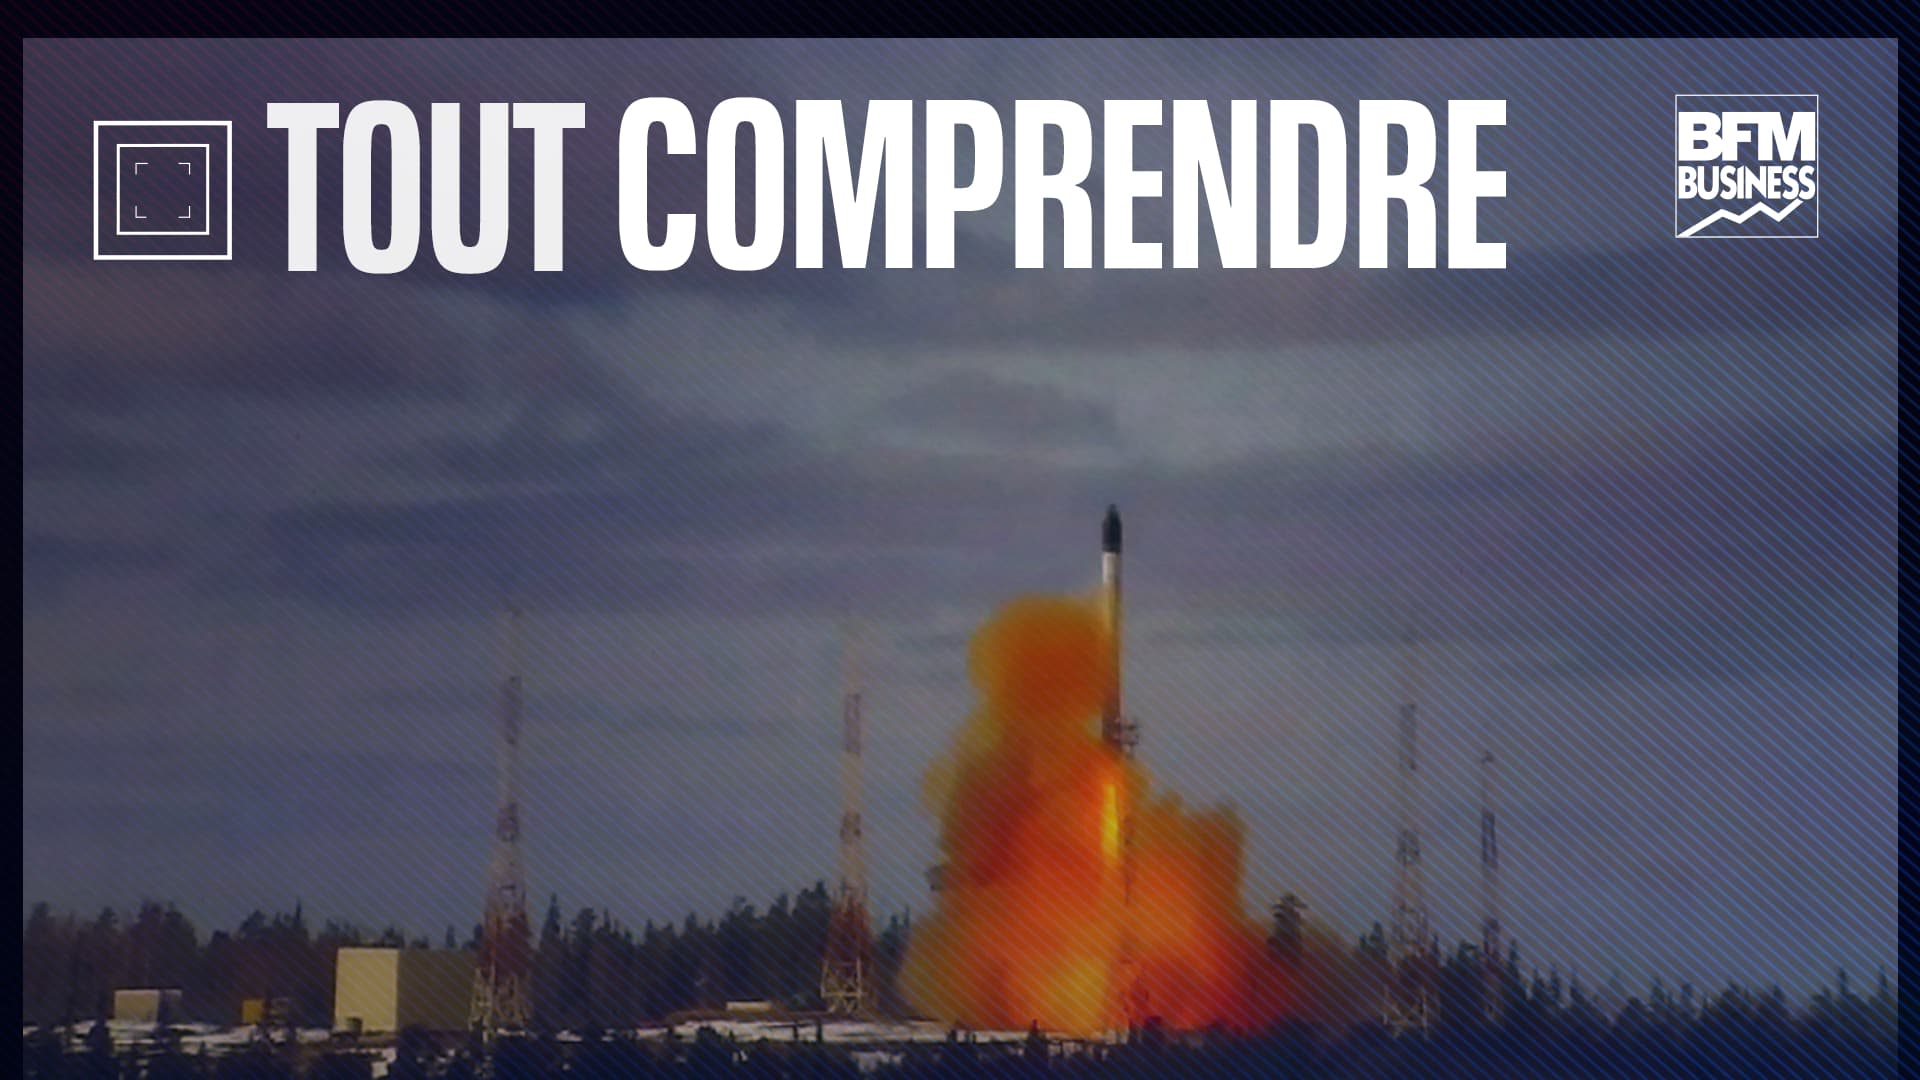 Verstehe alles – Satan 2, Russlands interkontinentale ballistische Rakete, die ein Land pulverisieren kann